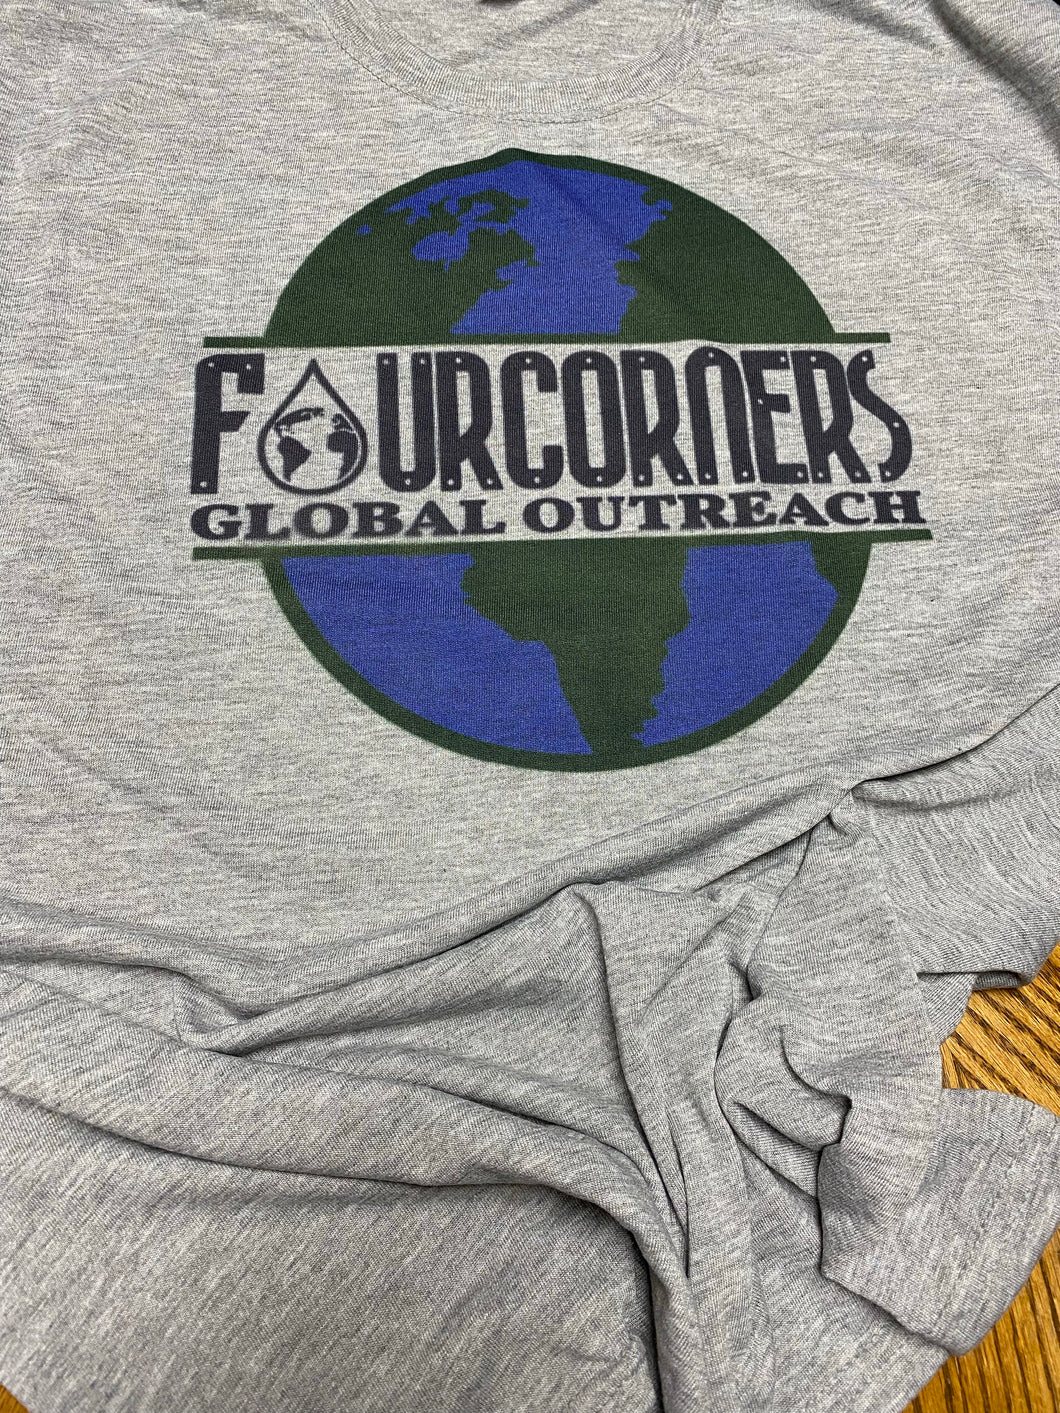 Four corners global outreach split globe